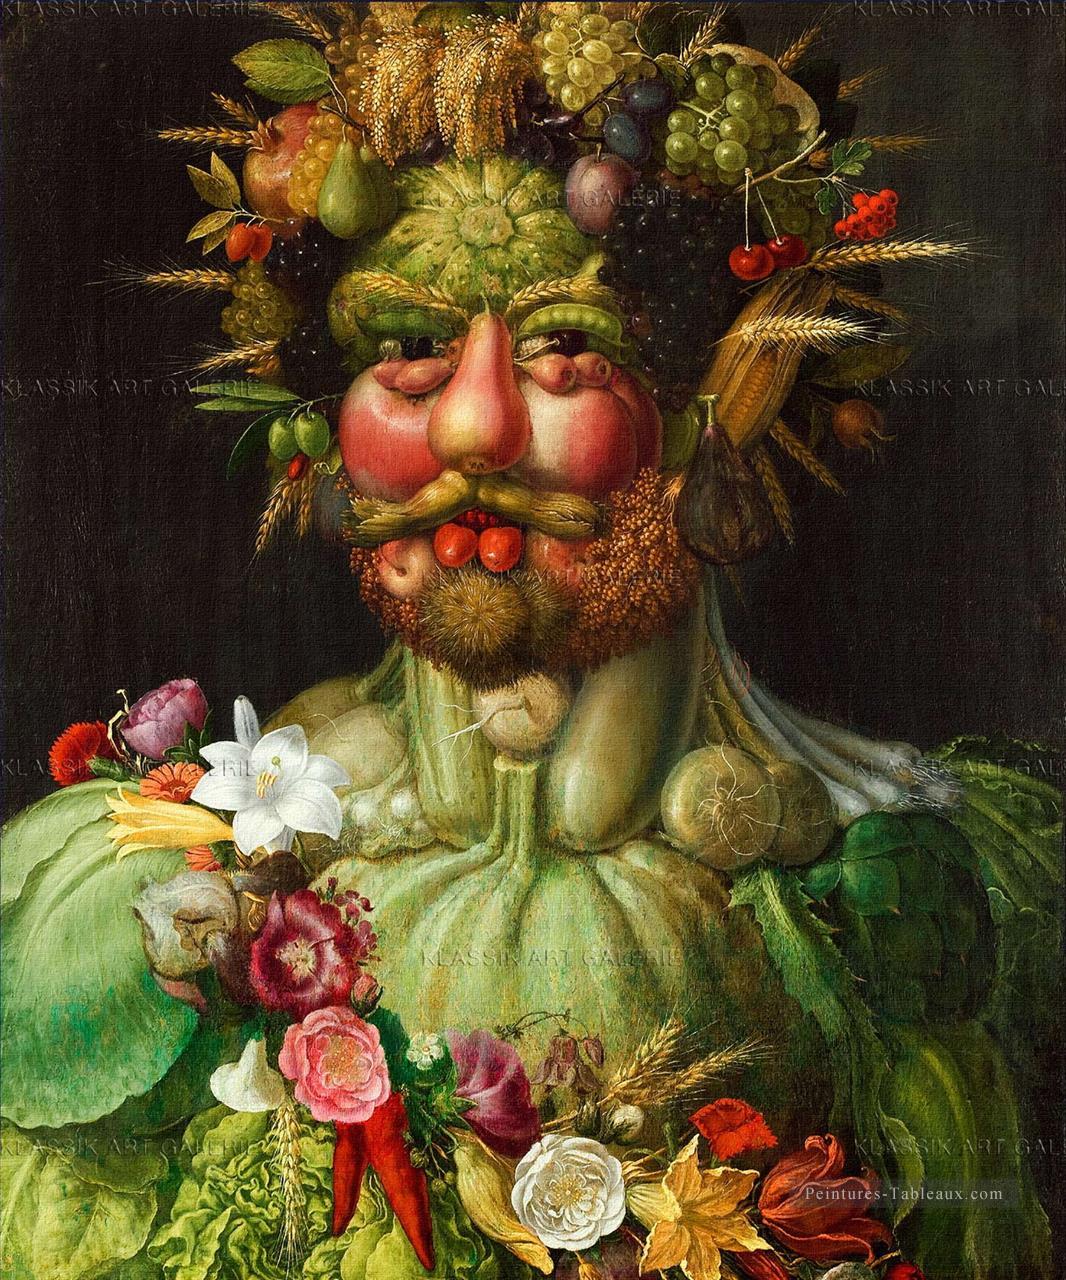 homme de légumes et de fleurs Giuseppe Arcimboldo Nature morte classique Peintures à l'huile